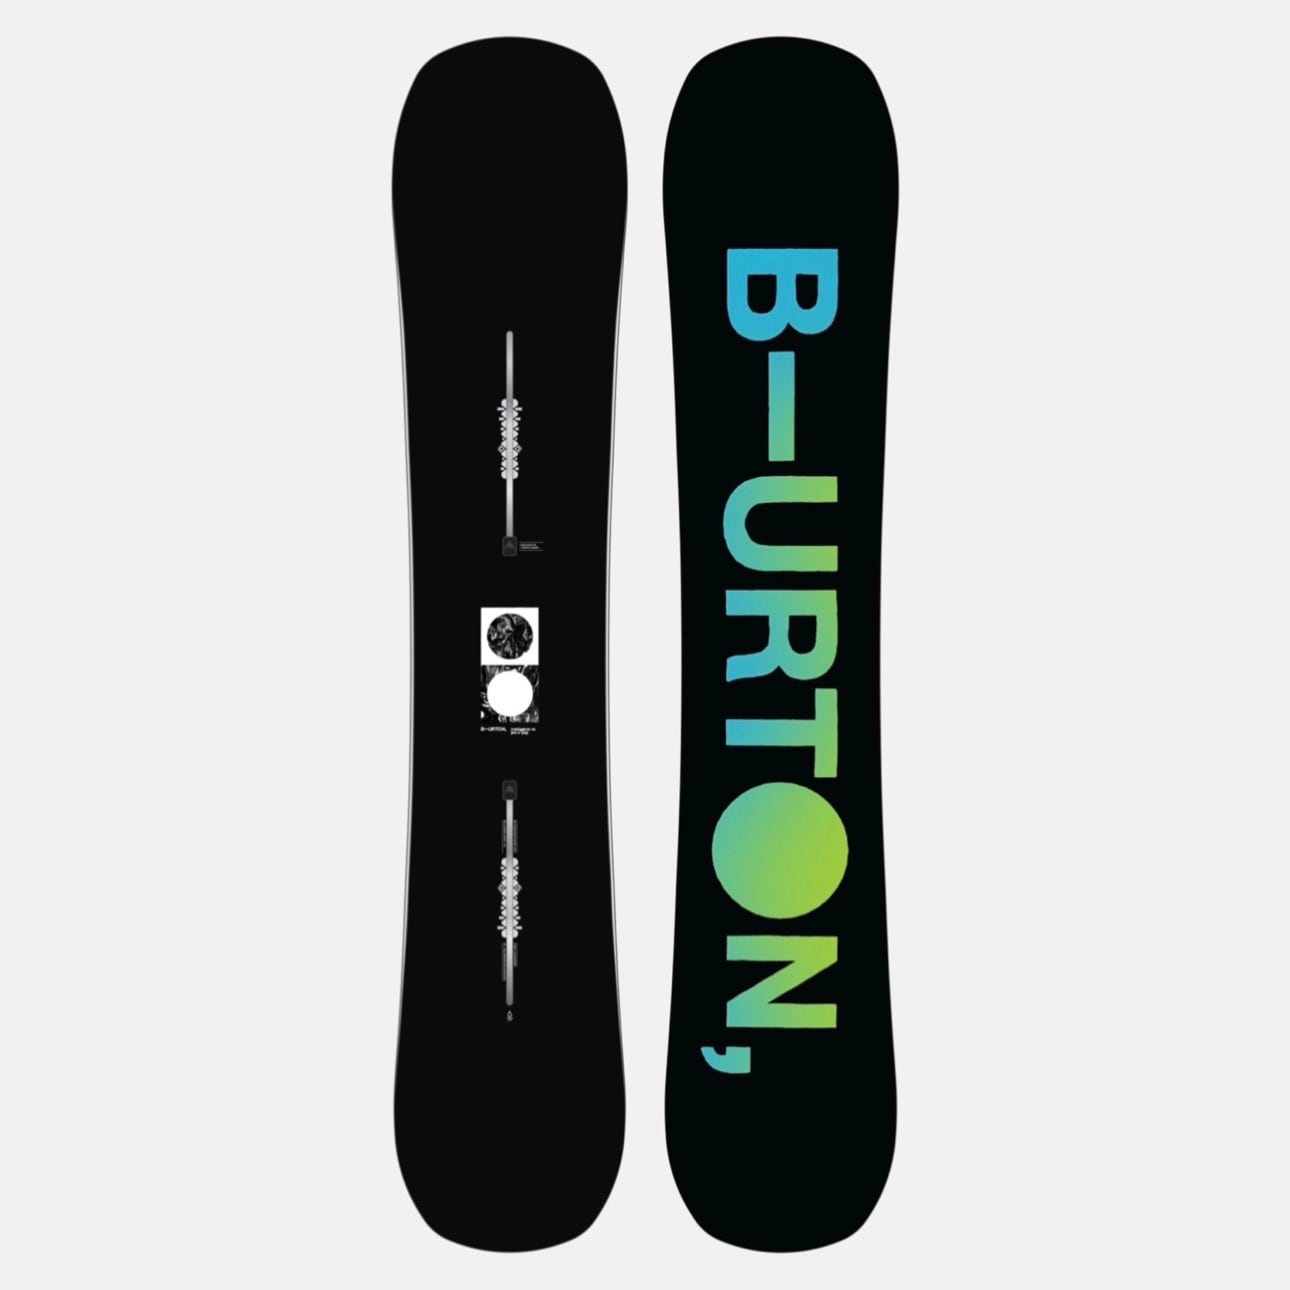 BURTON バートン スノーボード ボード